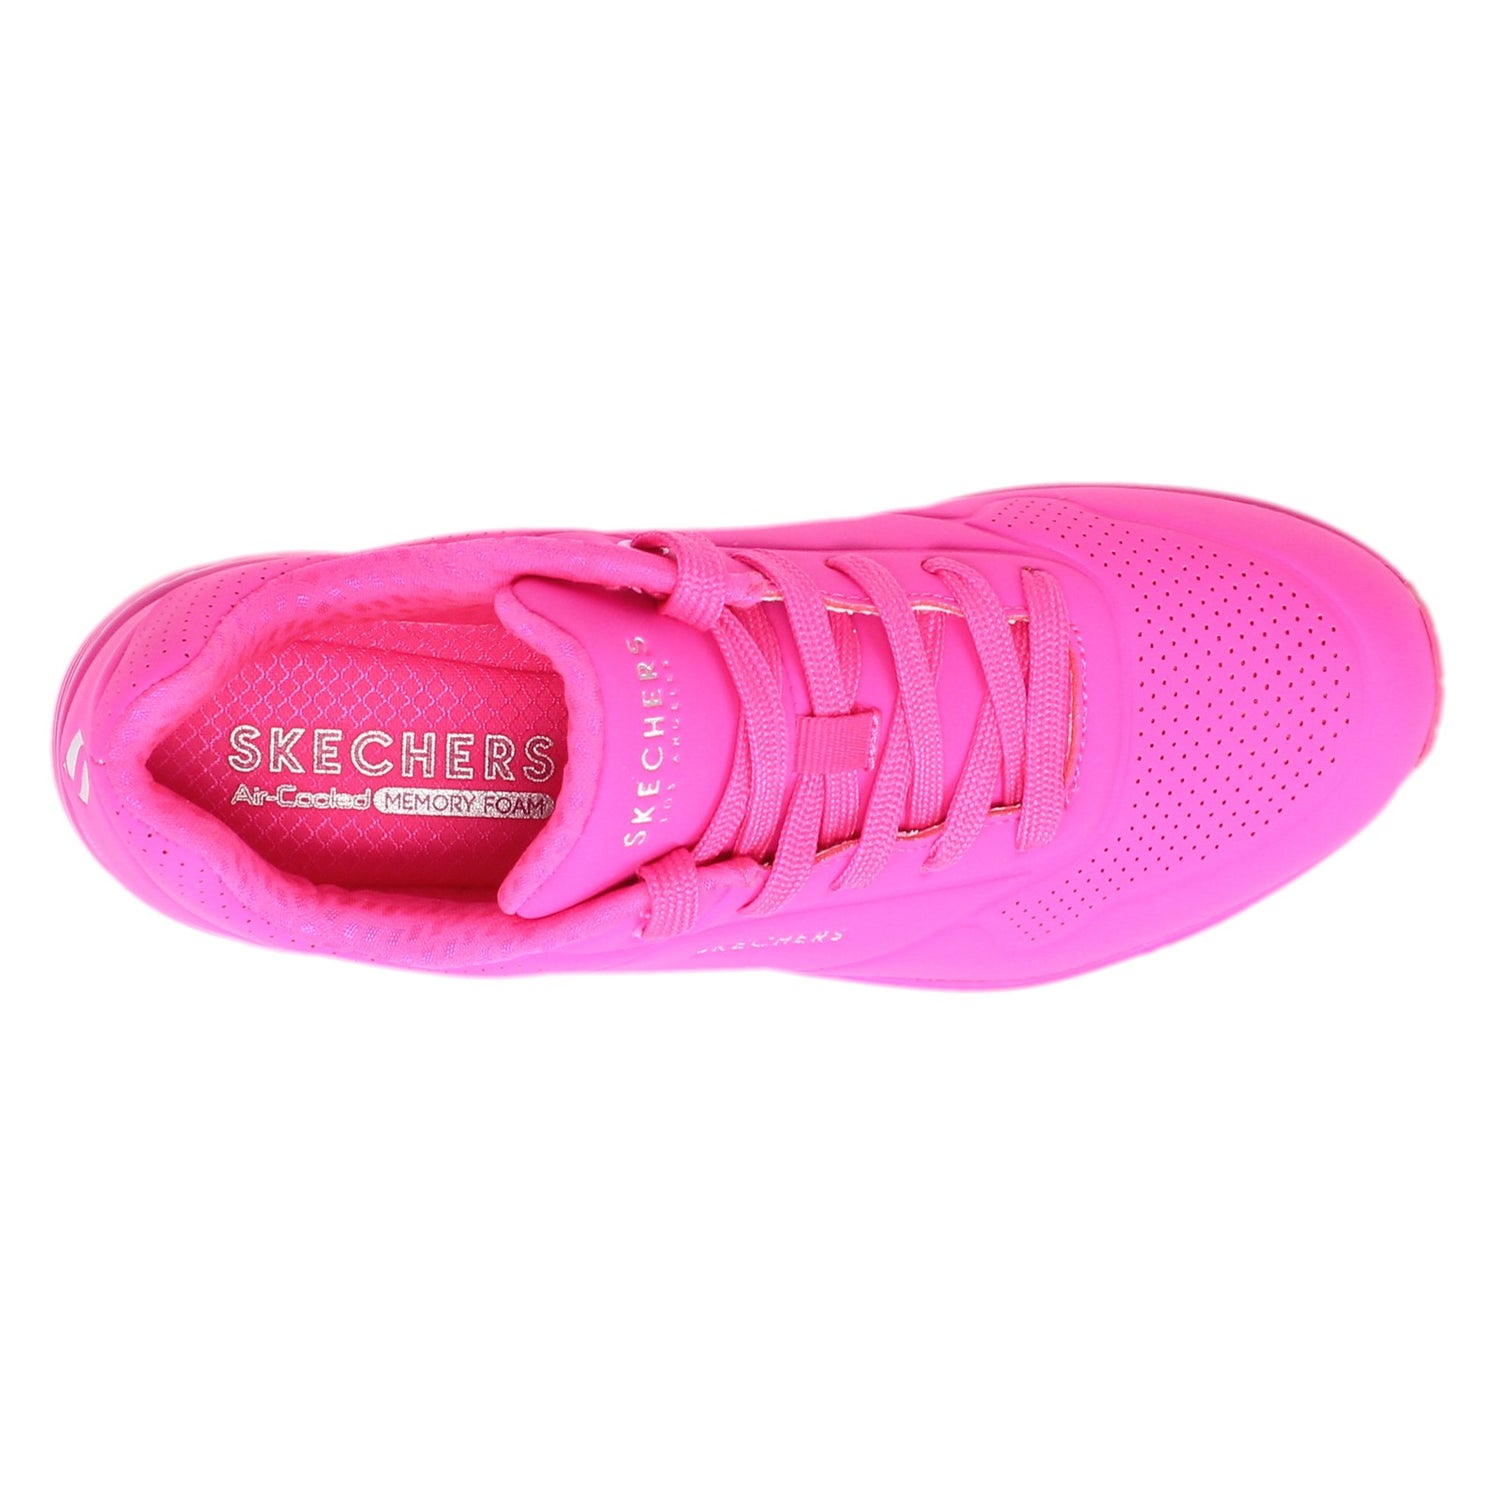 Peltz Shoes  Women's Skechers Street Uno - Neon Nights Sneaker - Wide Width Hot Pink 73667W-HTPK